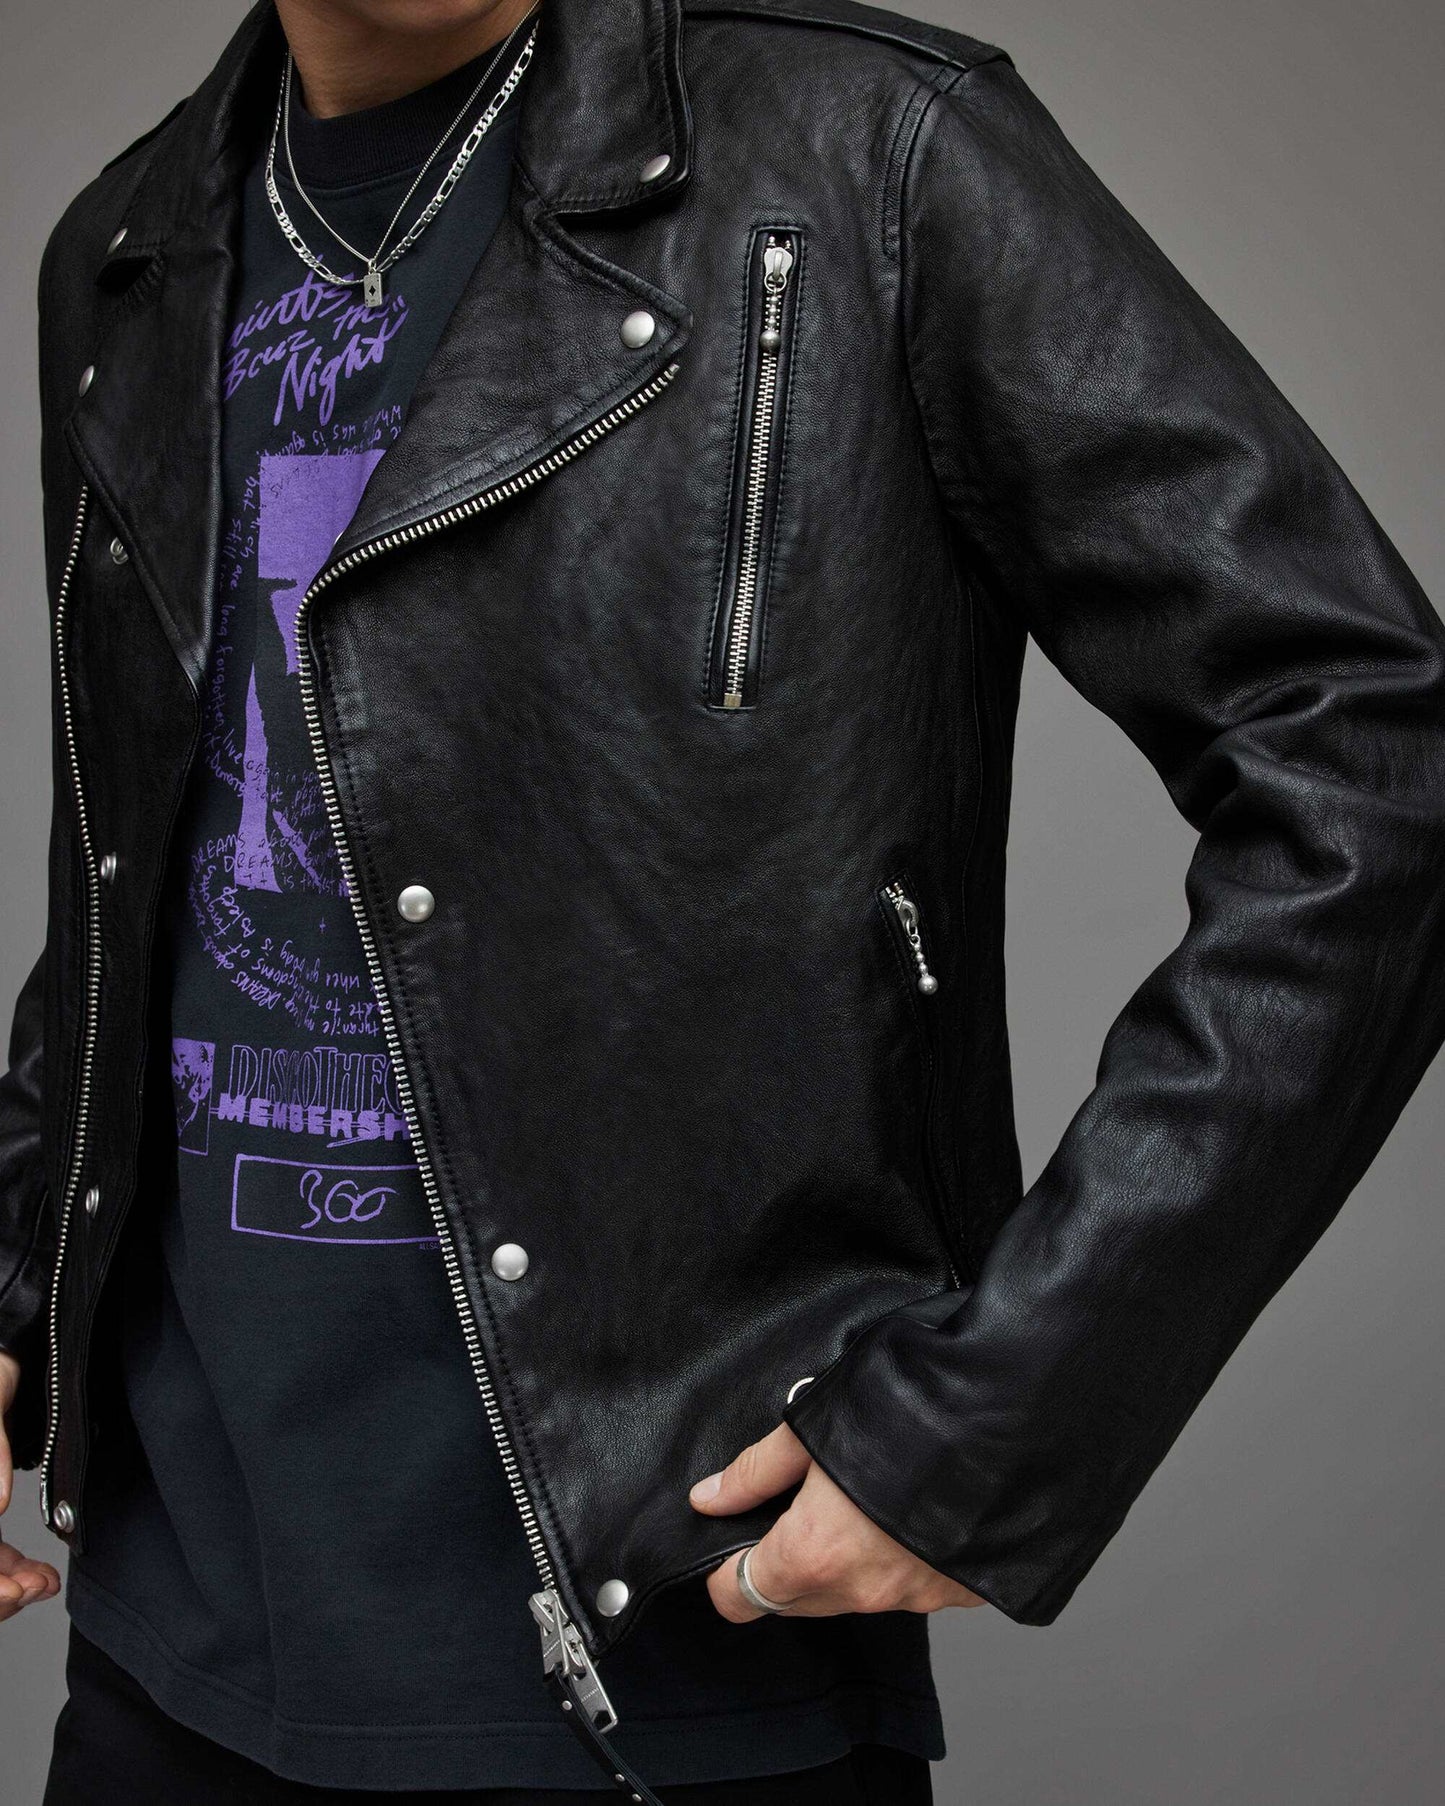 Men's Leather Vintage Biker Jacket In Black